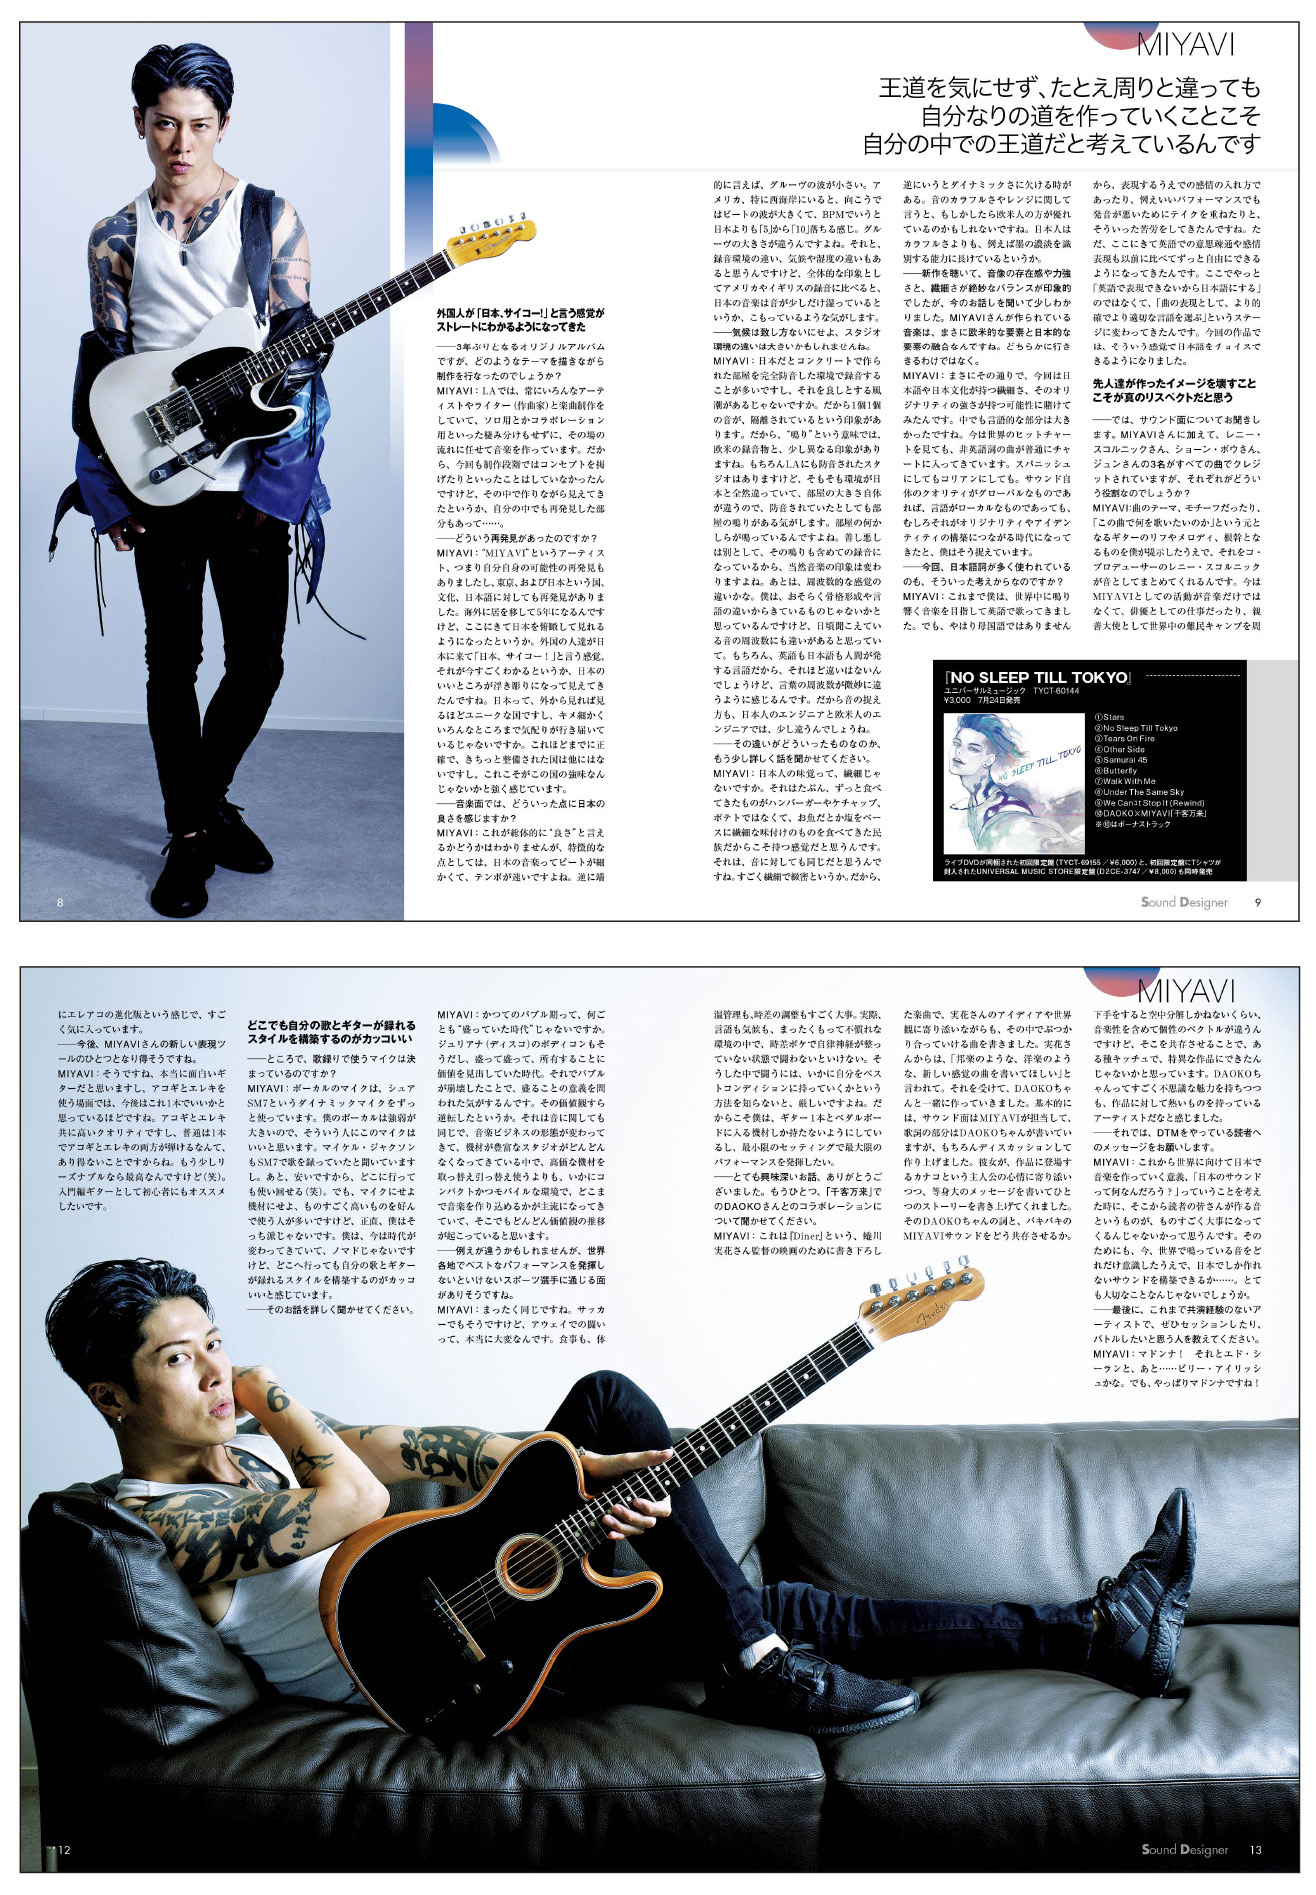 サムライ ギタリスト のmiyaviが登場 サウンド デザイナー19年8月号をチラ見 Tunegate Me